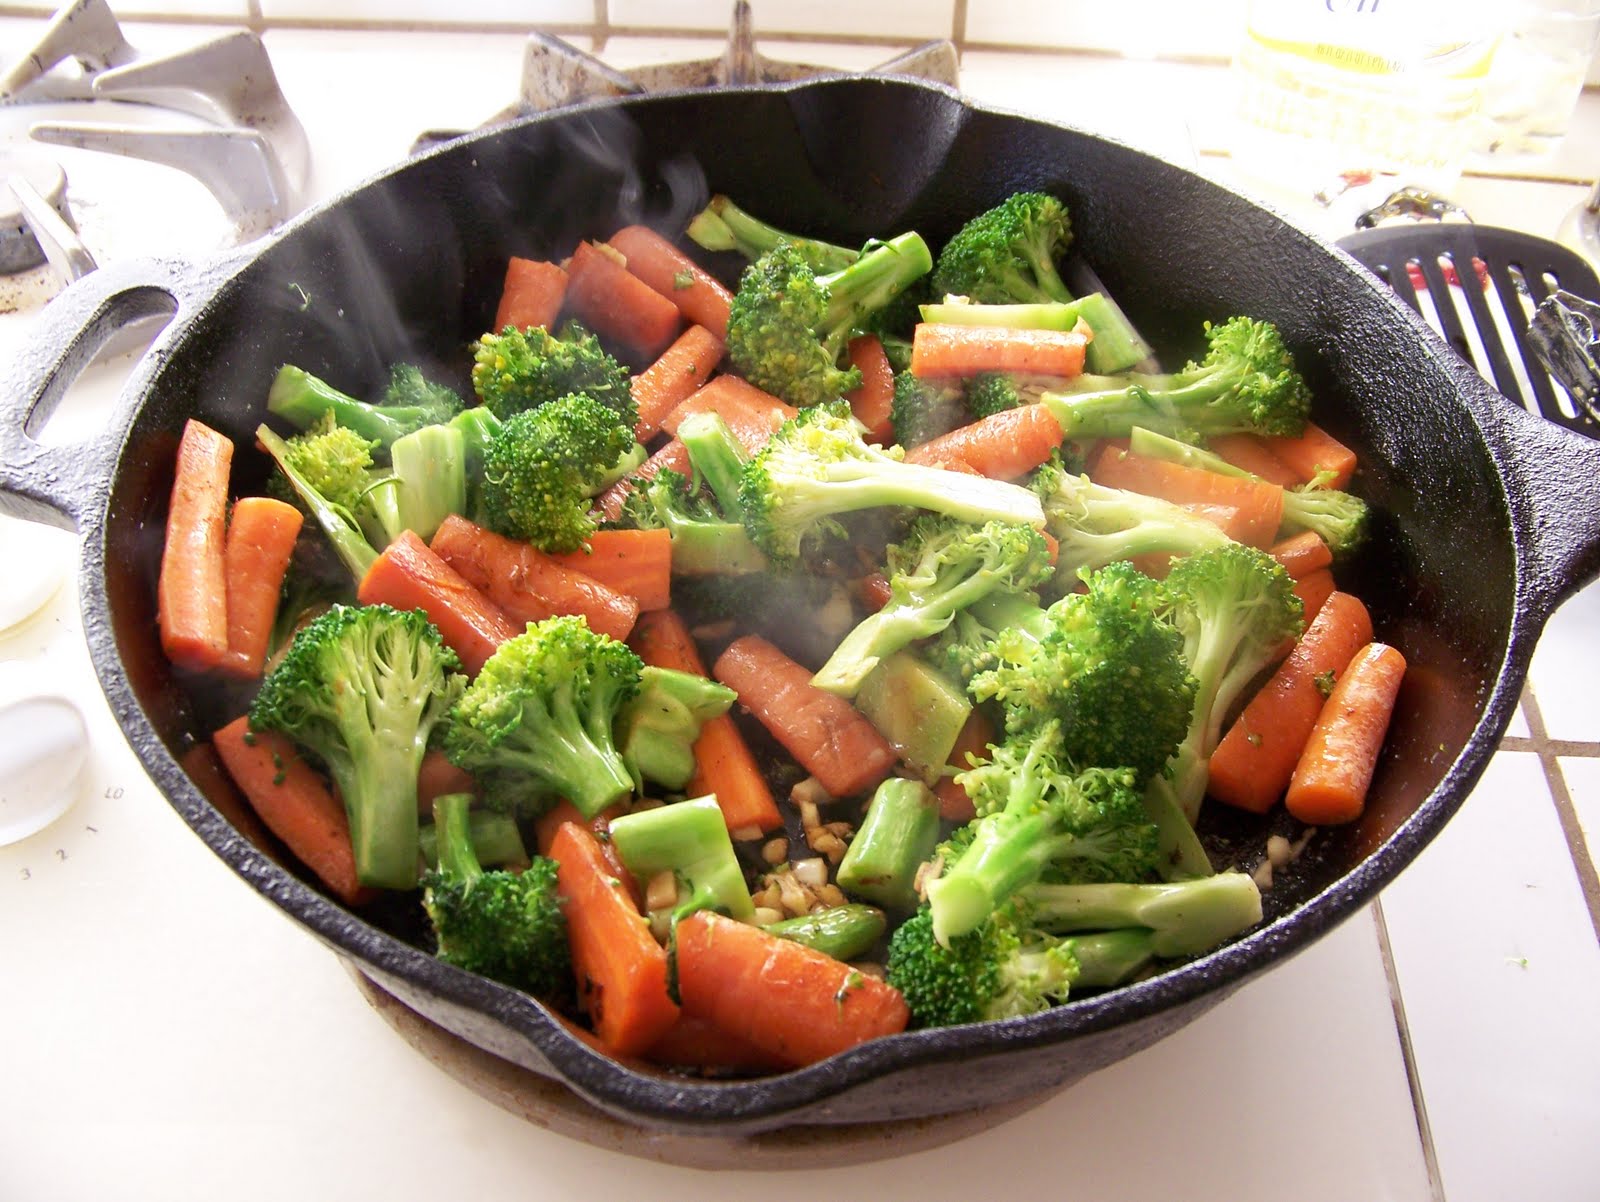 Приготовление вареных овощей. Приготовленные овощи. Отварные овощи. Припущенные овощи. Пареные овощи.